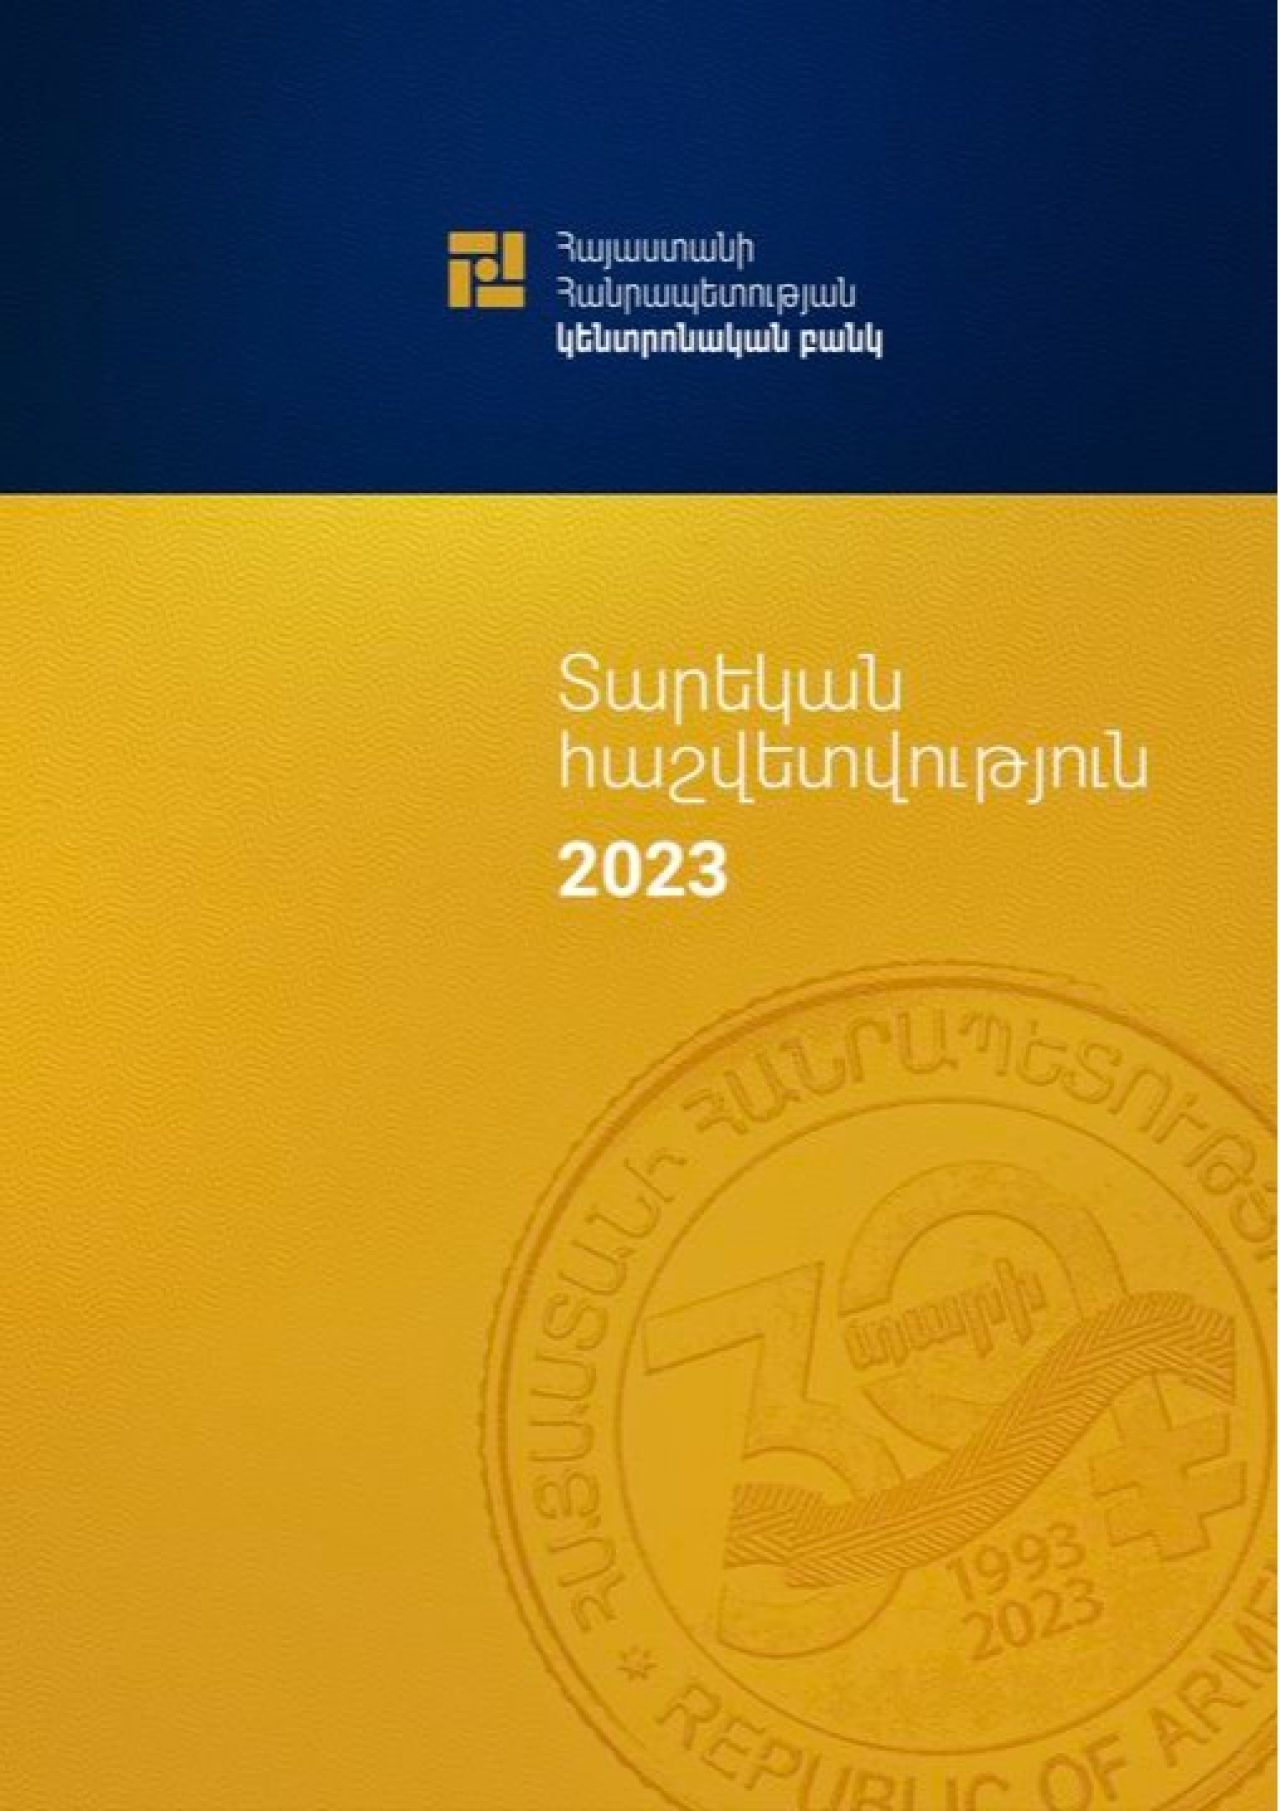 Կենտրոնական բանկը հրապարակել է 2023 թվականի տարեկան հաշվետվությունը